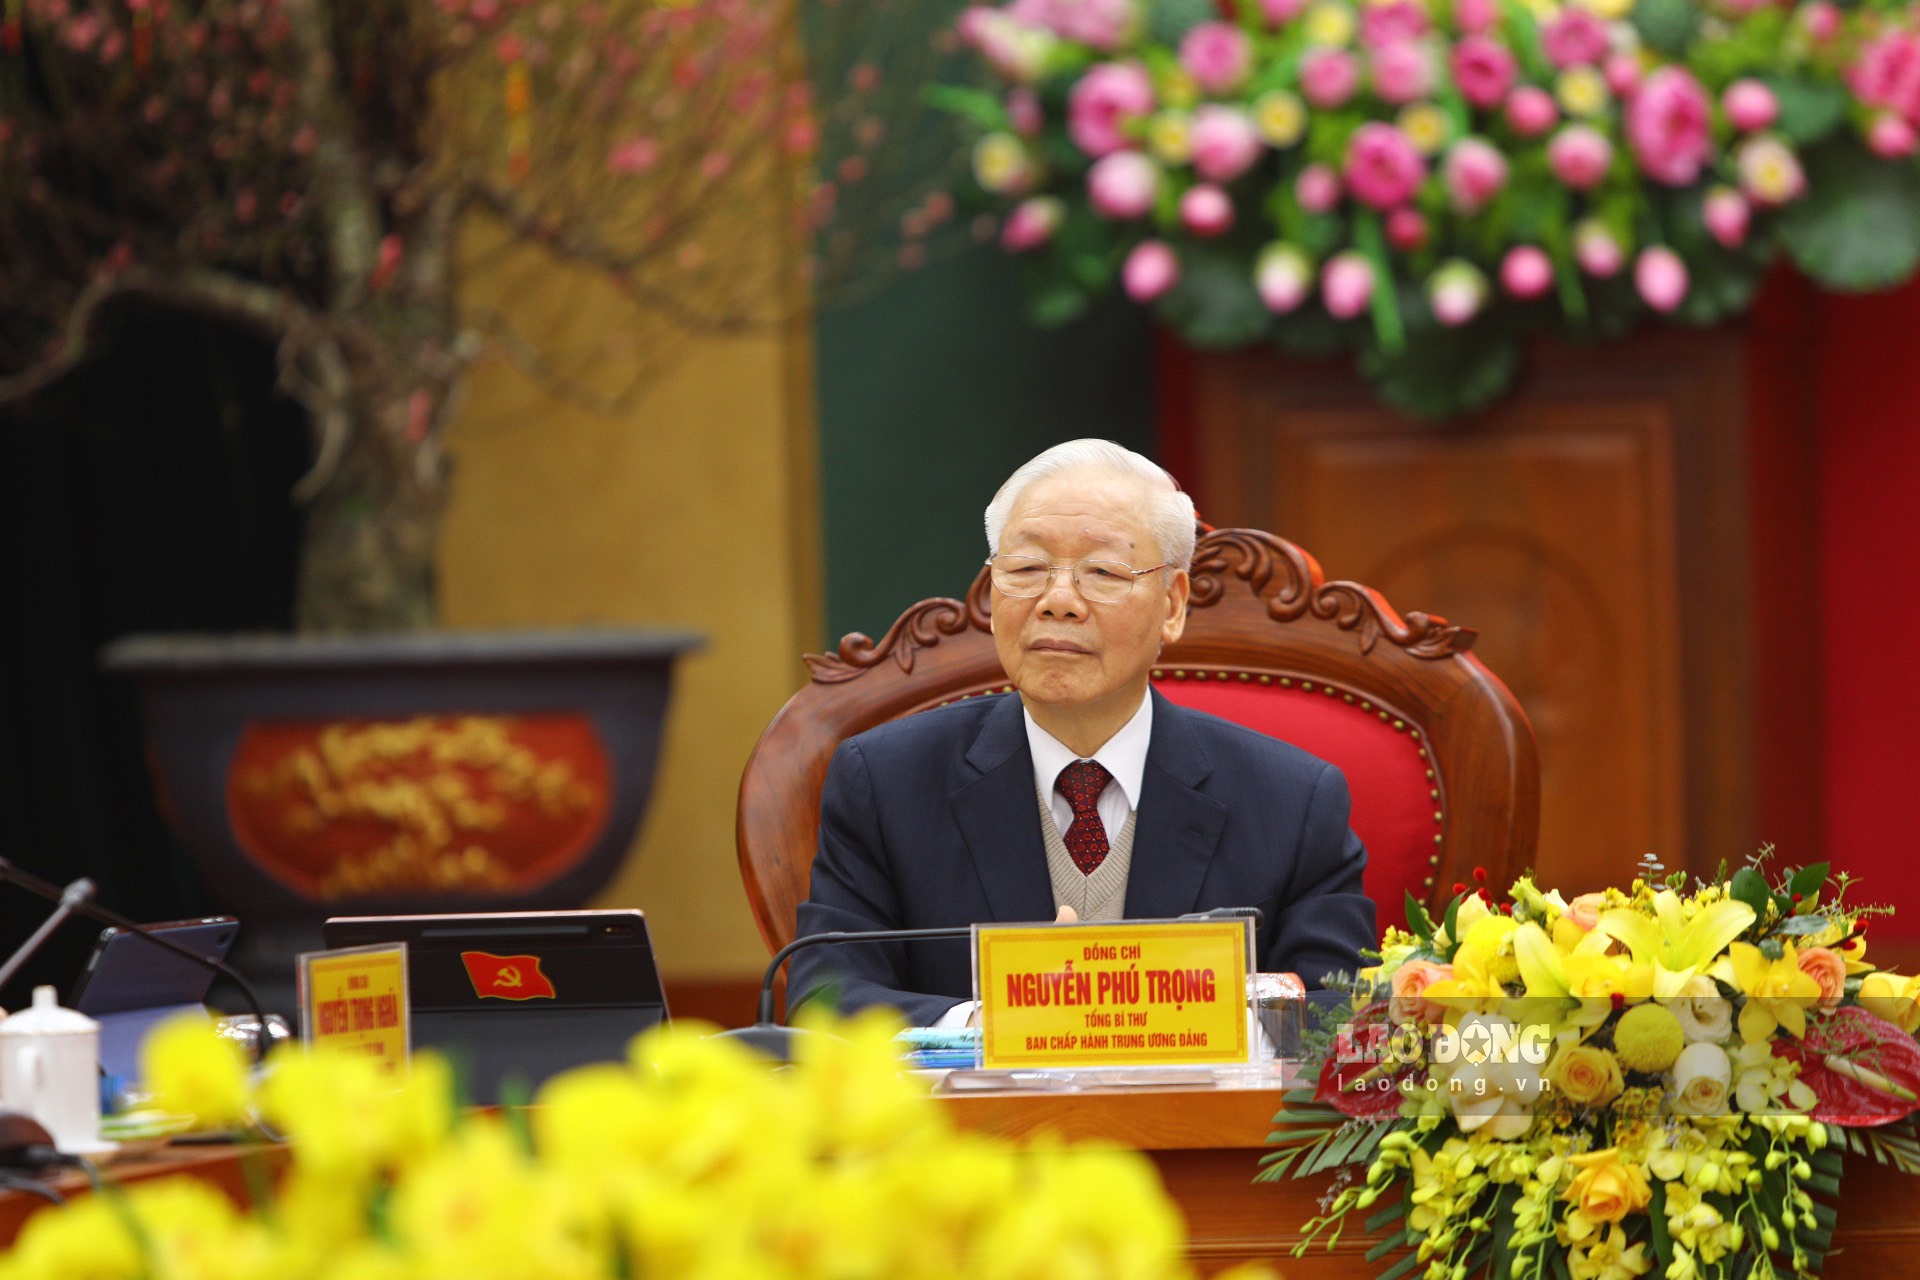 Tổng Bí thư Nguyễn Phú Trọng đang nghe bài phát biểu của đồng chí Nguyễn Thanh Hải - Bí thư Tỉnh uỷ Thái Nguyên.